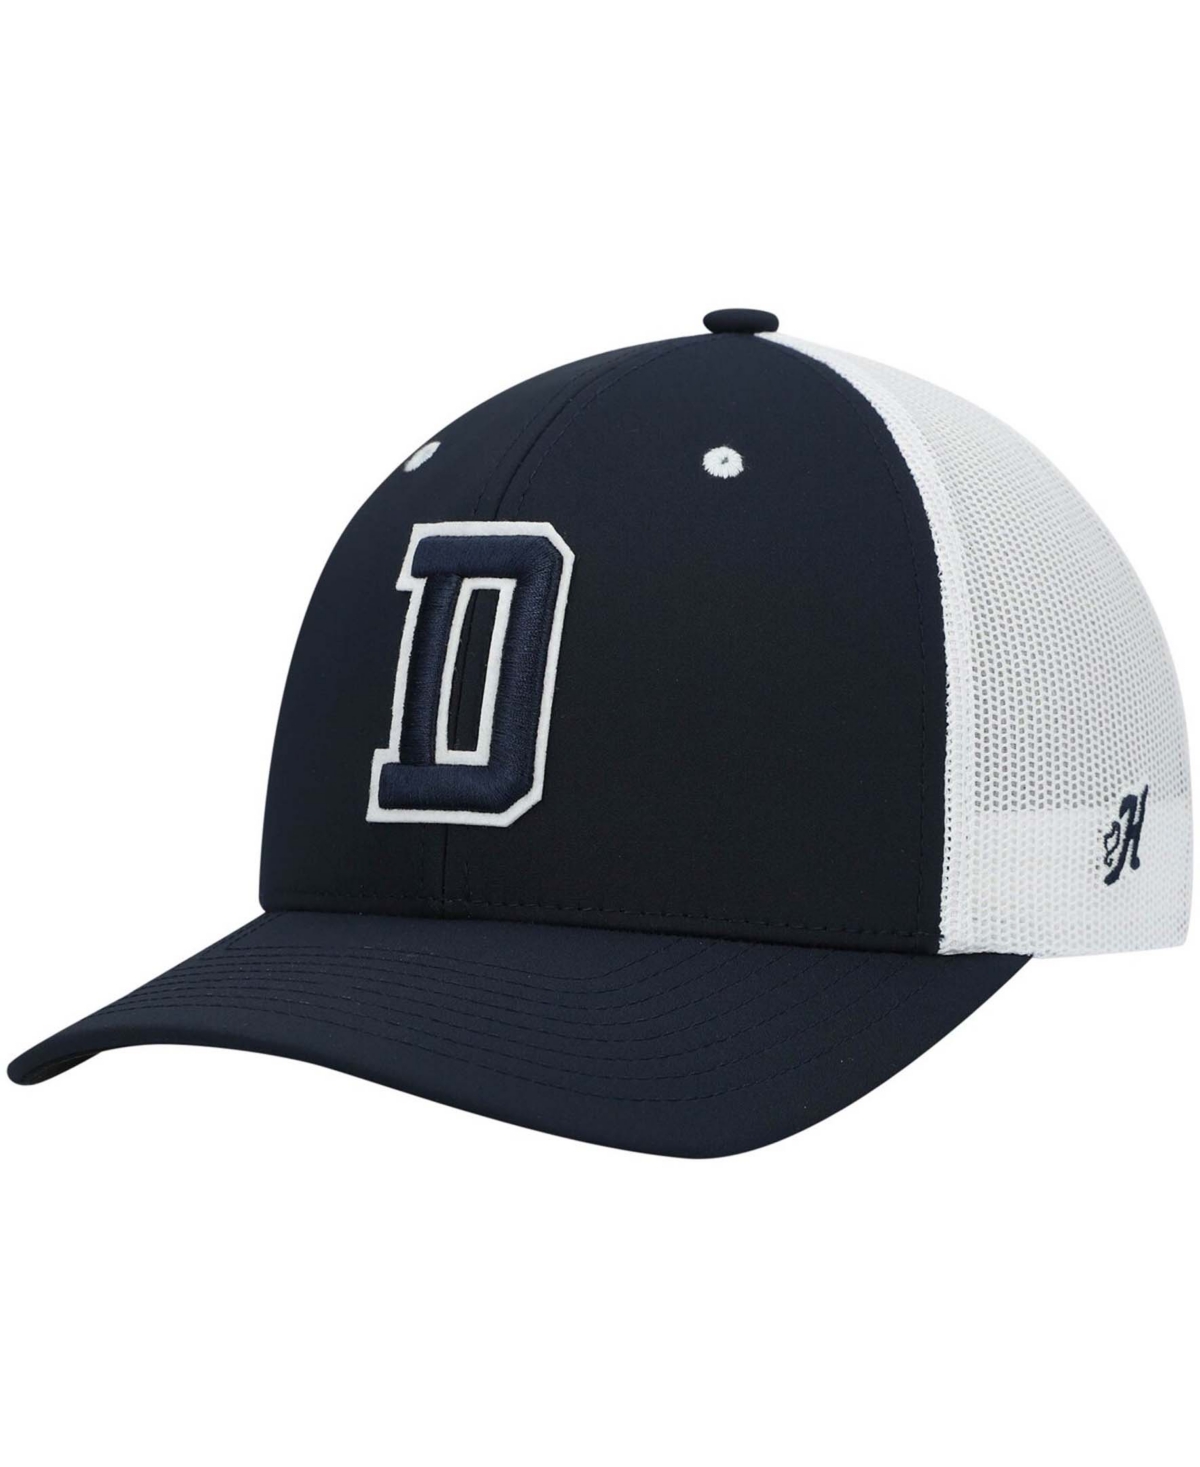 Men's Navy, White Dallas Cowboys Logo Snapback Hat - Navy